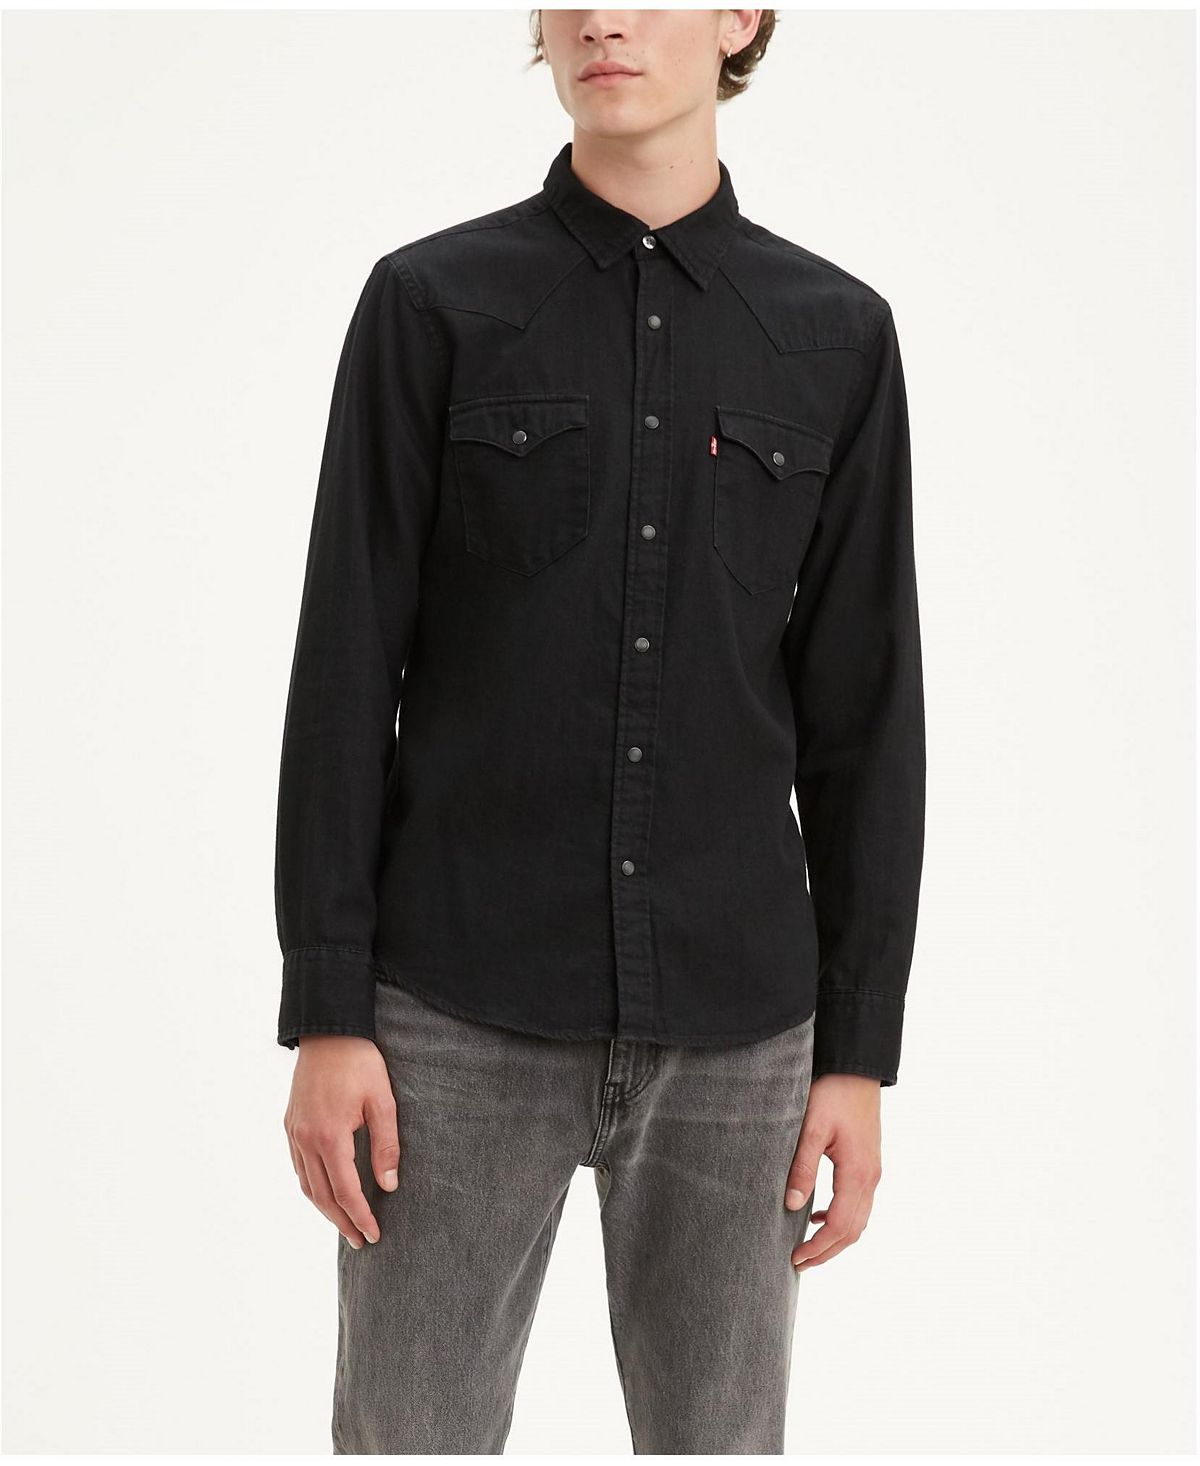 Мужская классическая чистая джинсовая рубашка стандартного кроя в стиле вестерн Levi's, мульти